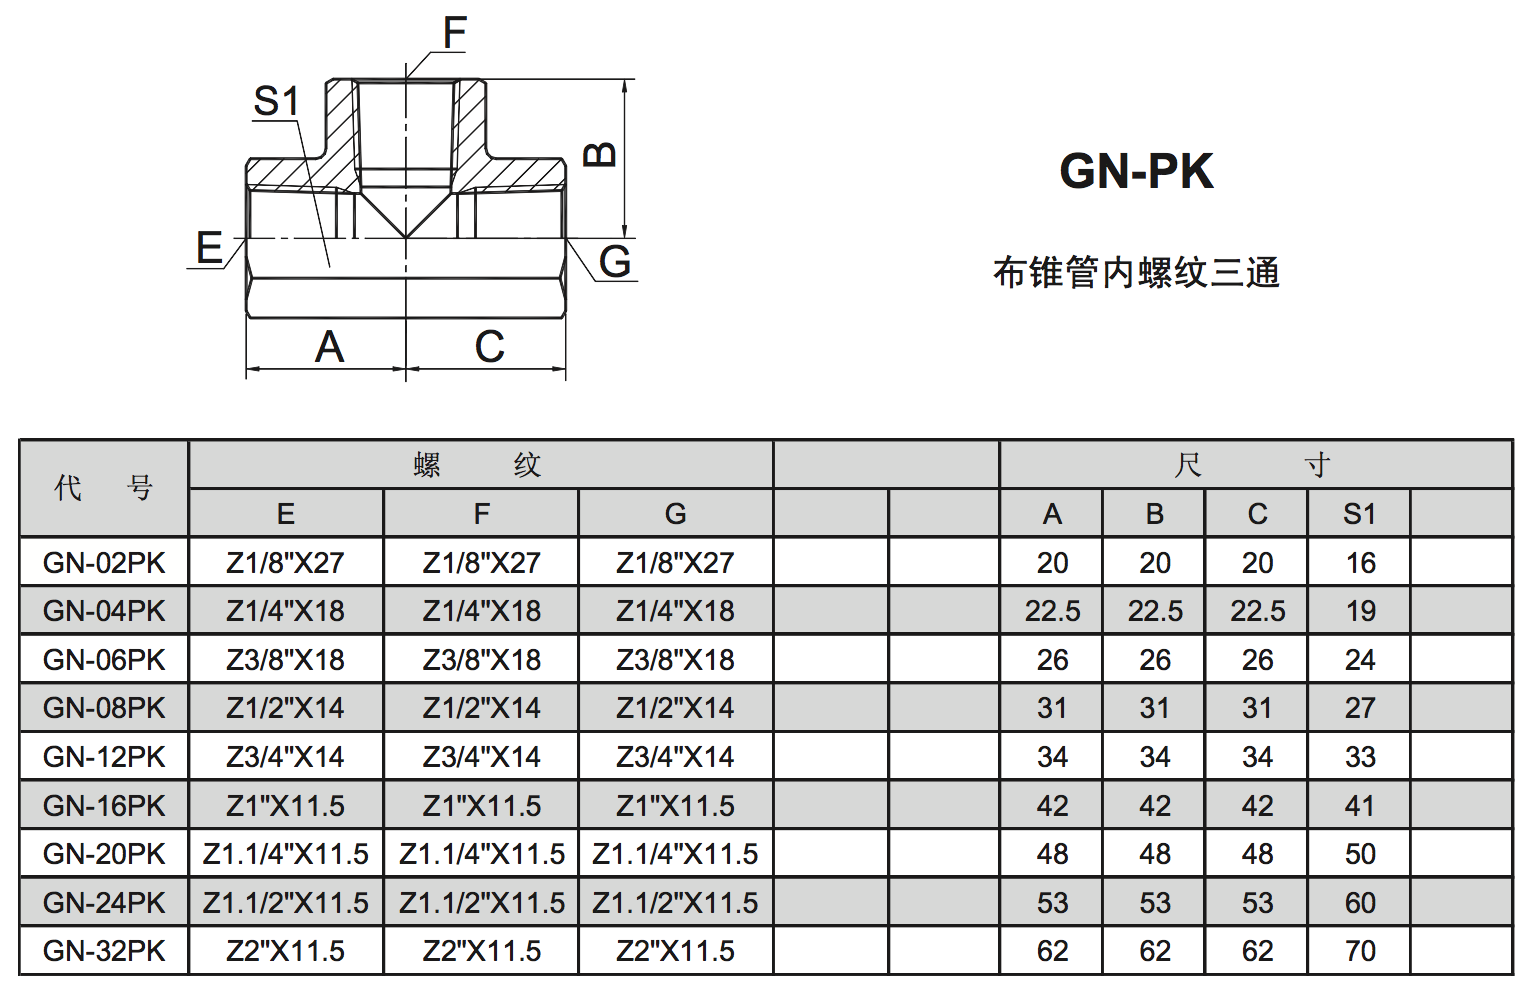 GN-PK 5605 irratti kan argamu